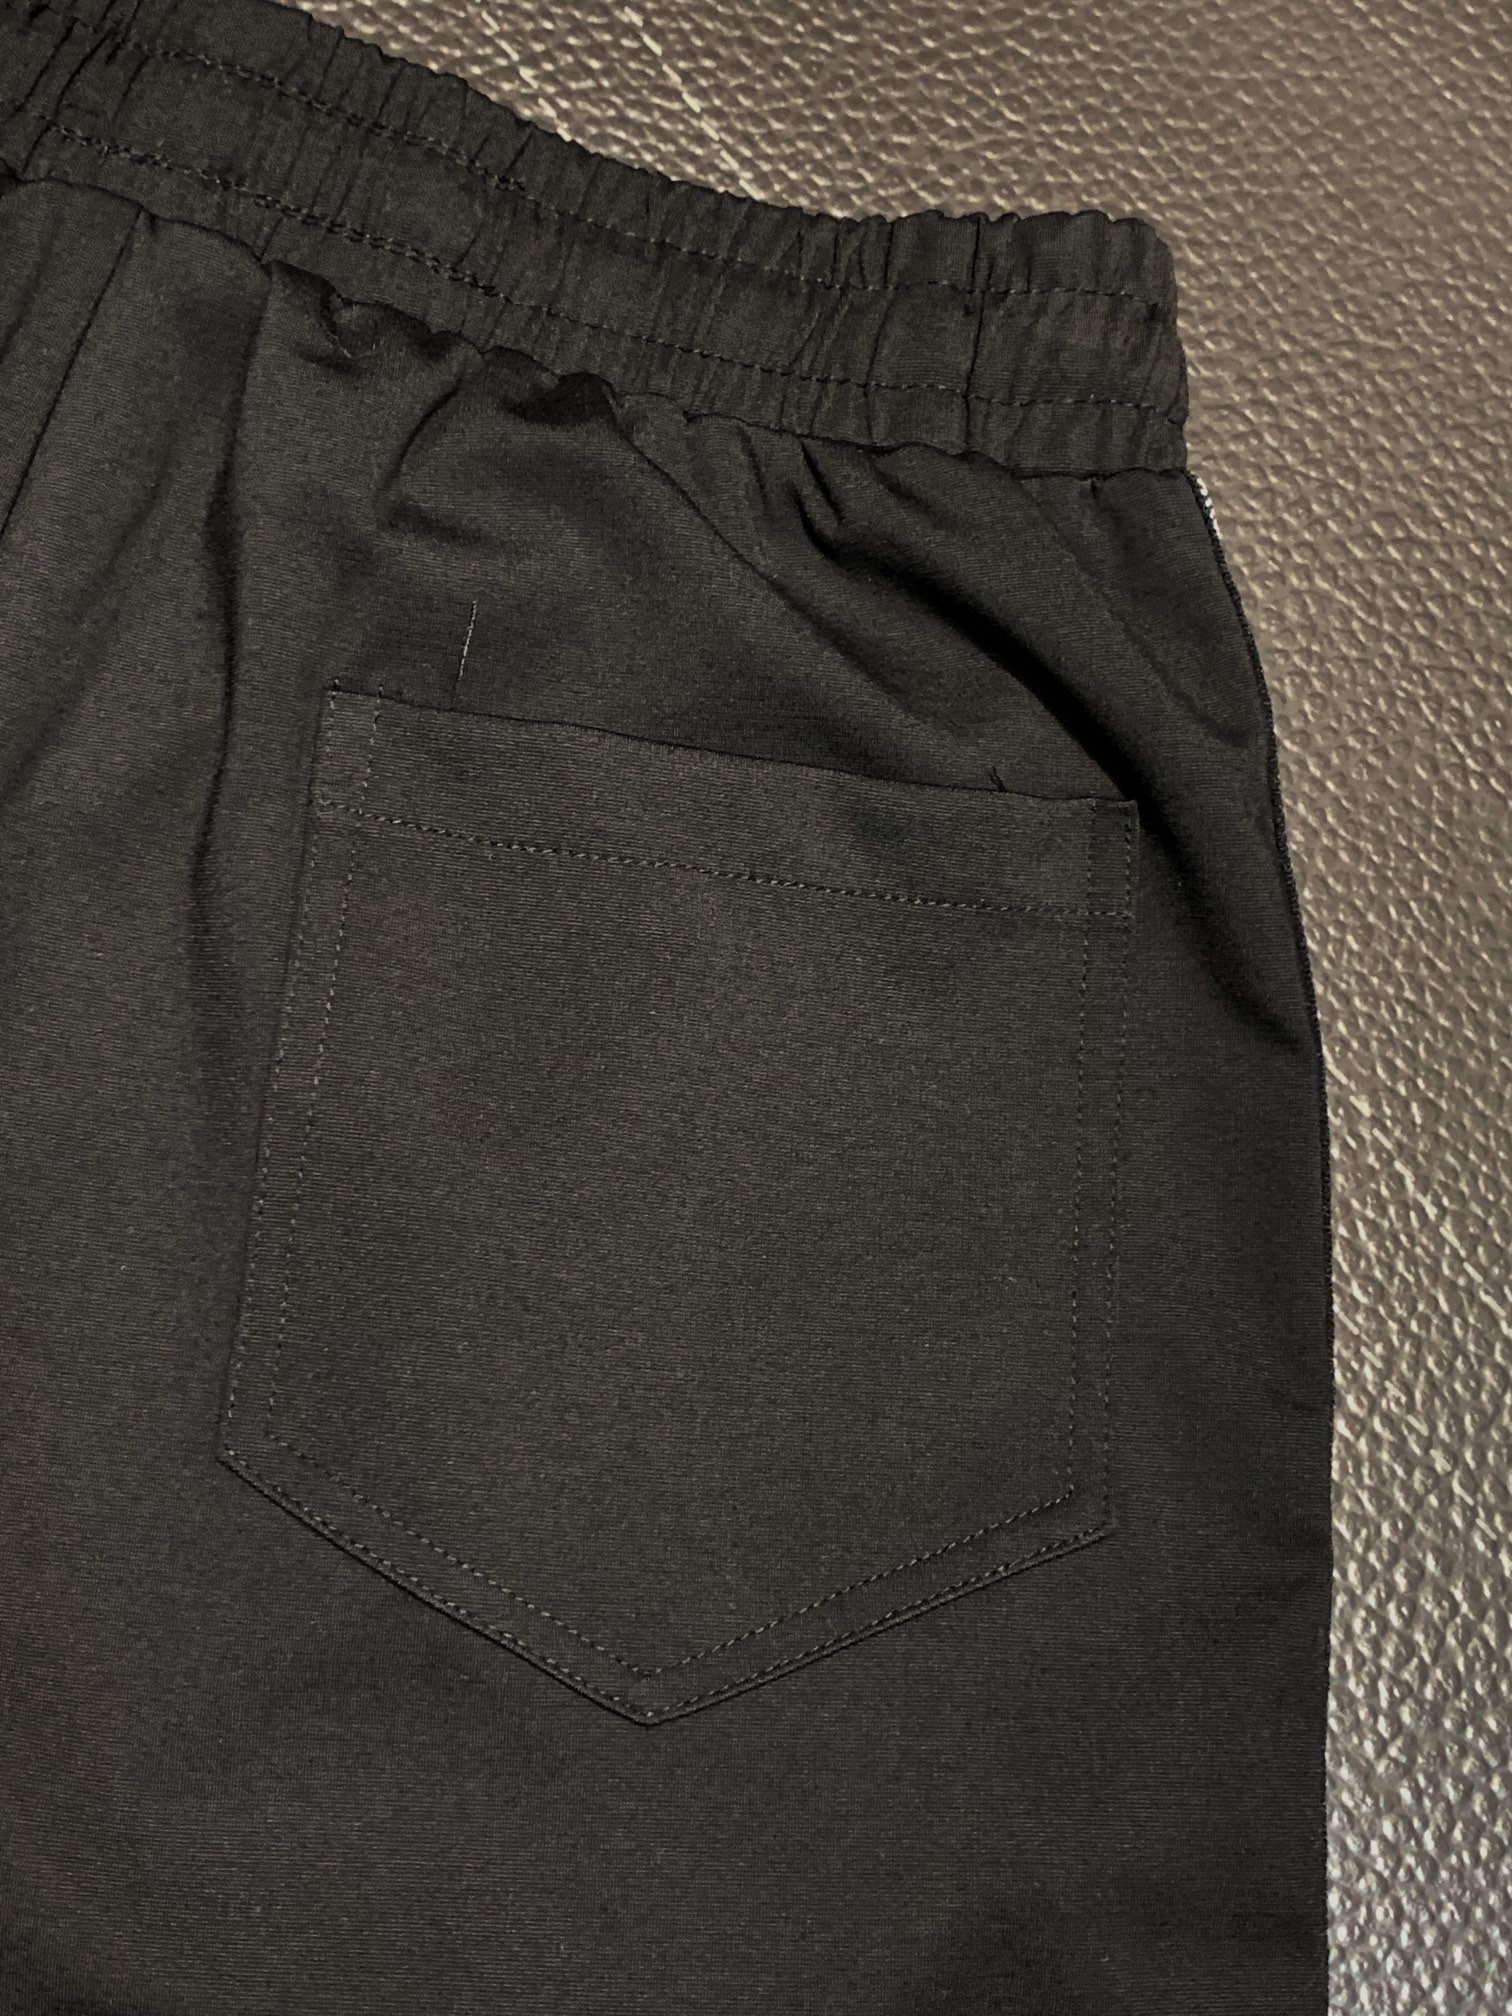 ディオール パンツ レディースＮ級品 ズボン ショットパンツ ロゴ刺繍 純綿 柔らかい 流行品 ゆったり ブラック_6